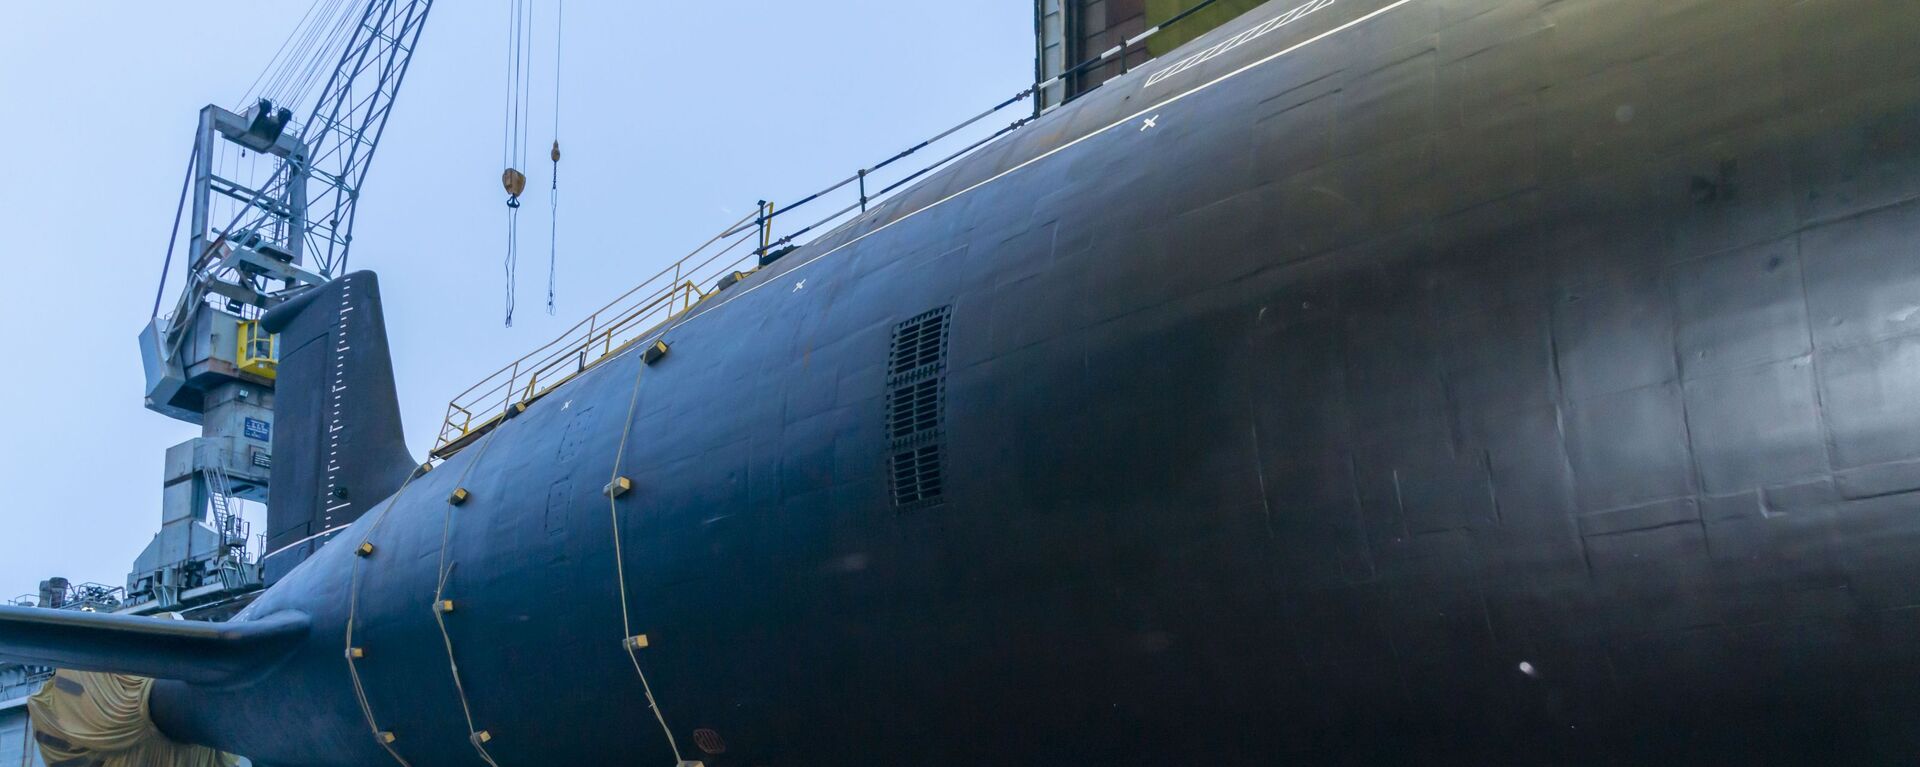 Спуск на воду атомной подлодки проекта Ясень-М в Северодвинске - Sputnik Грузия, 1920, 27.12.2021